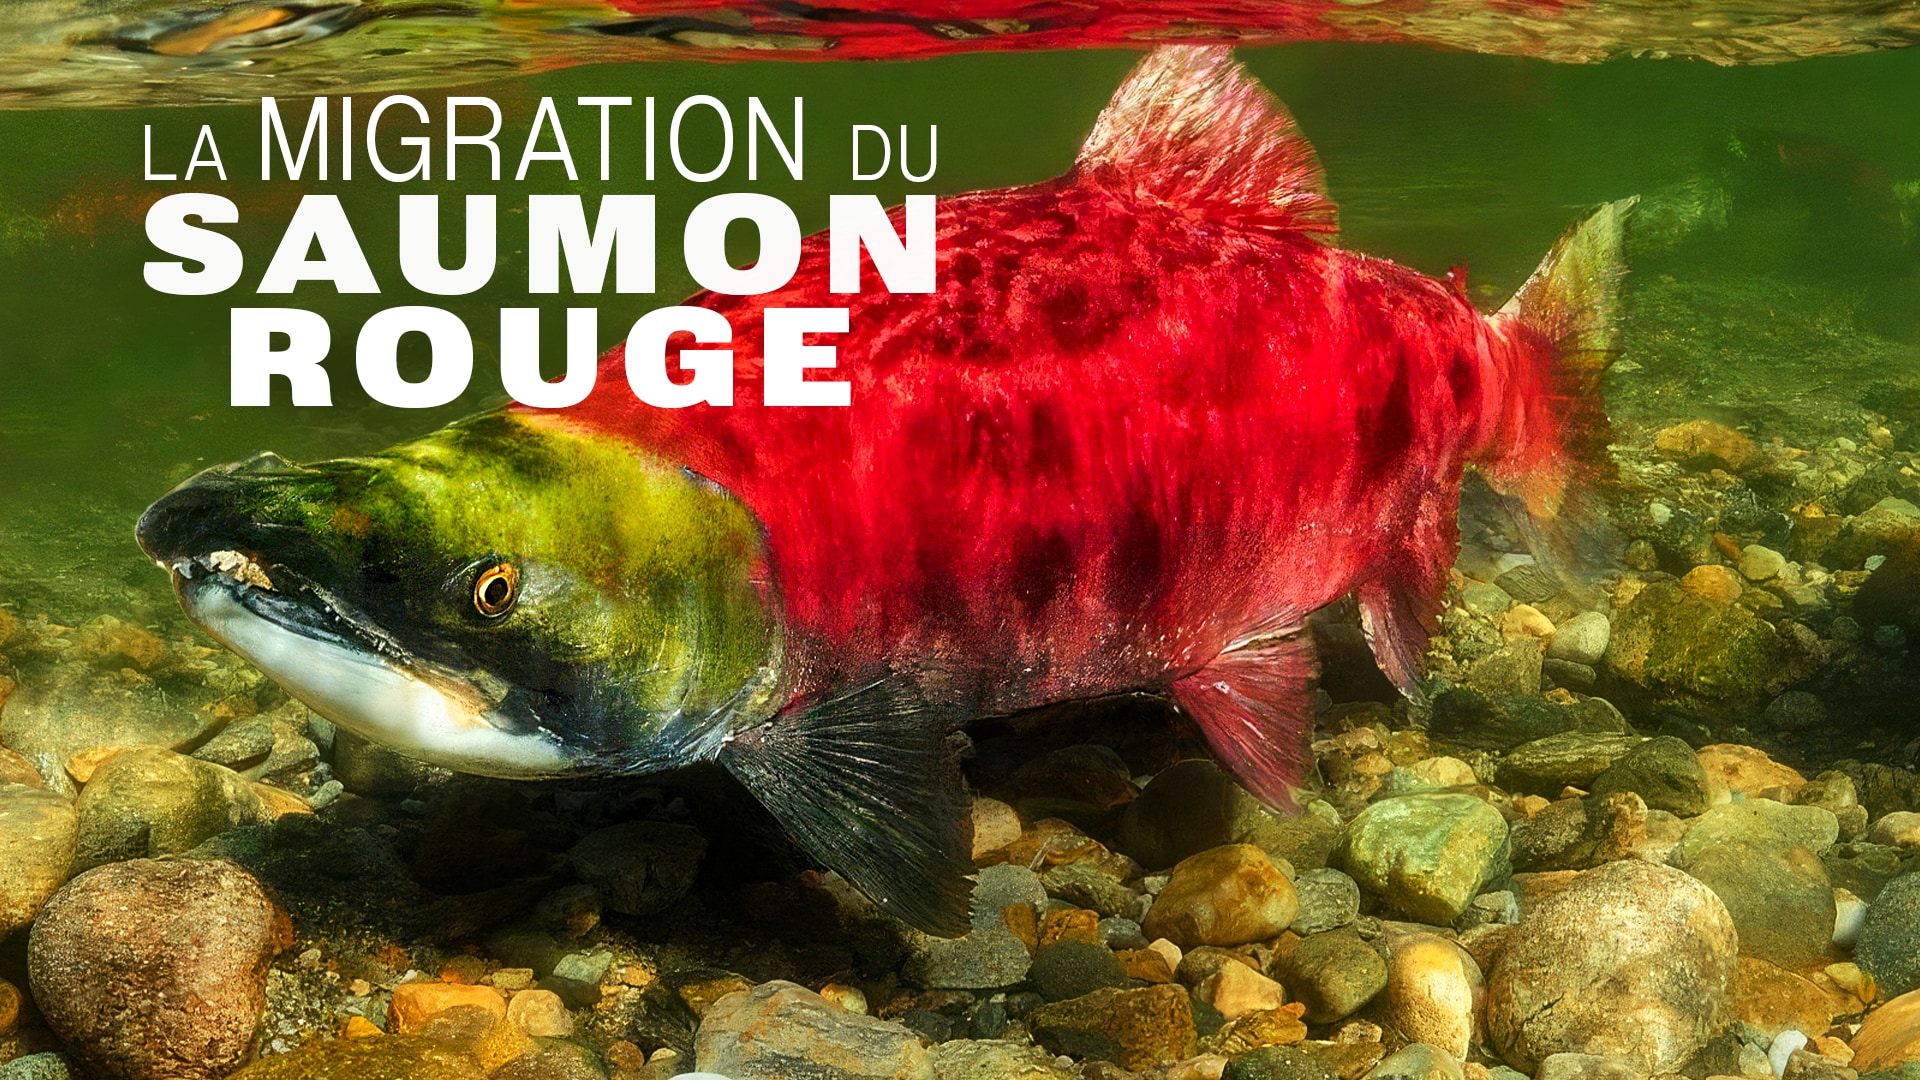 La migration du saumon rouge